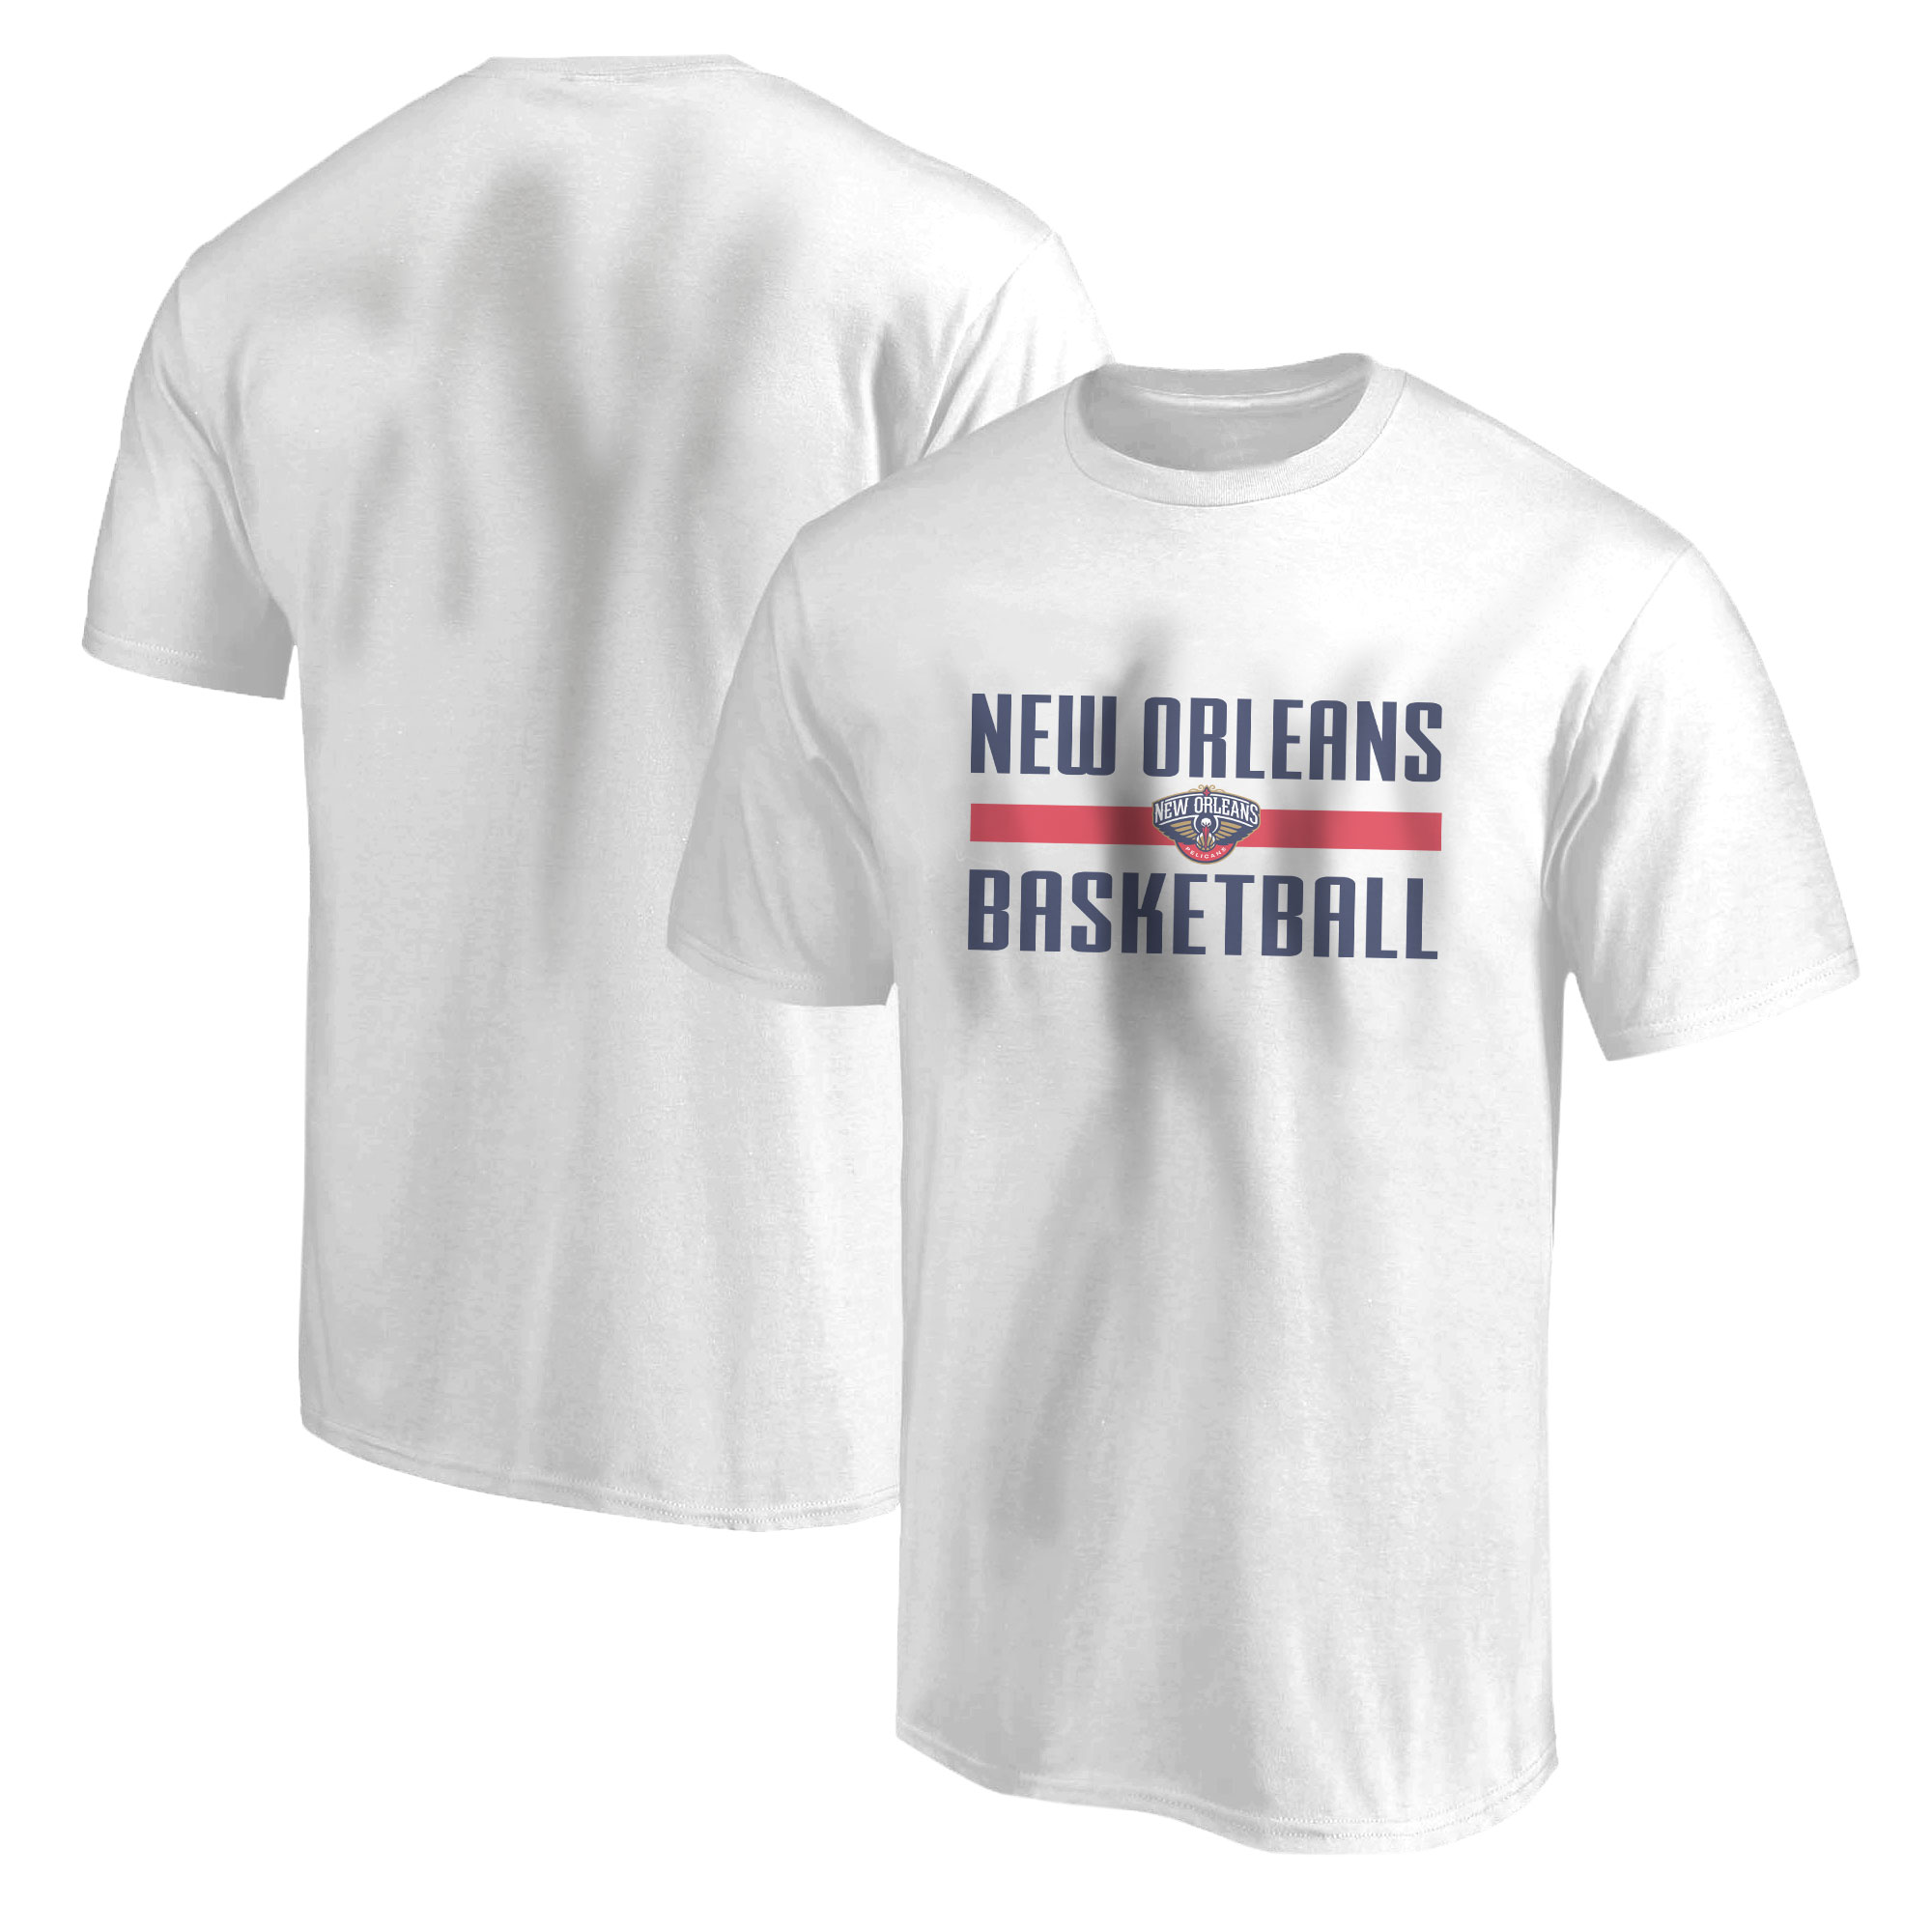 New Orleans Basketball Tshirt (TSH-WHT-530)